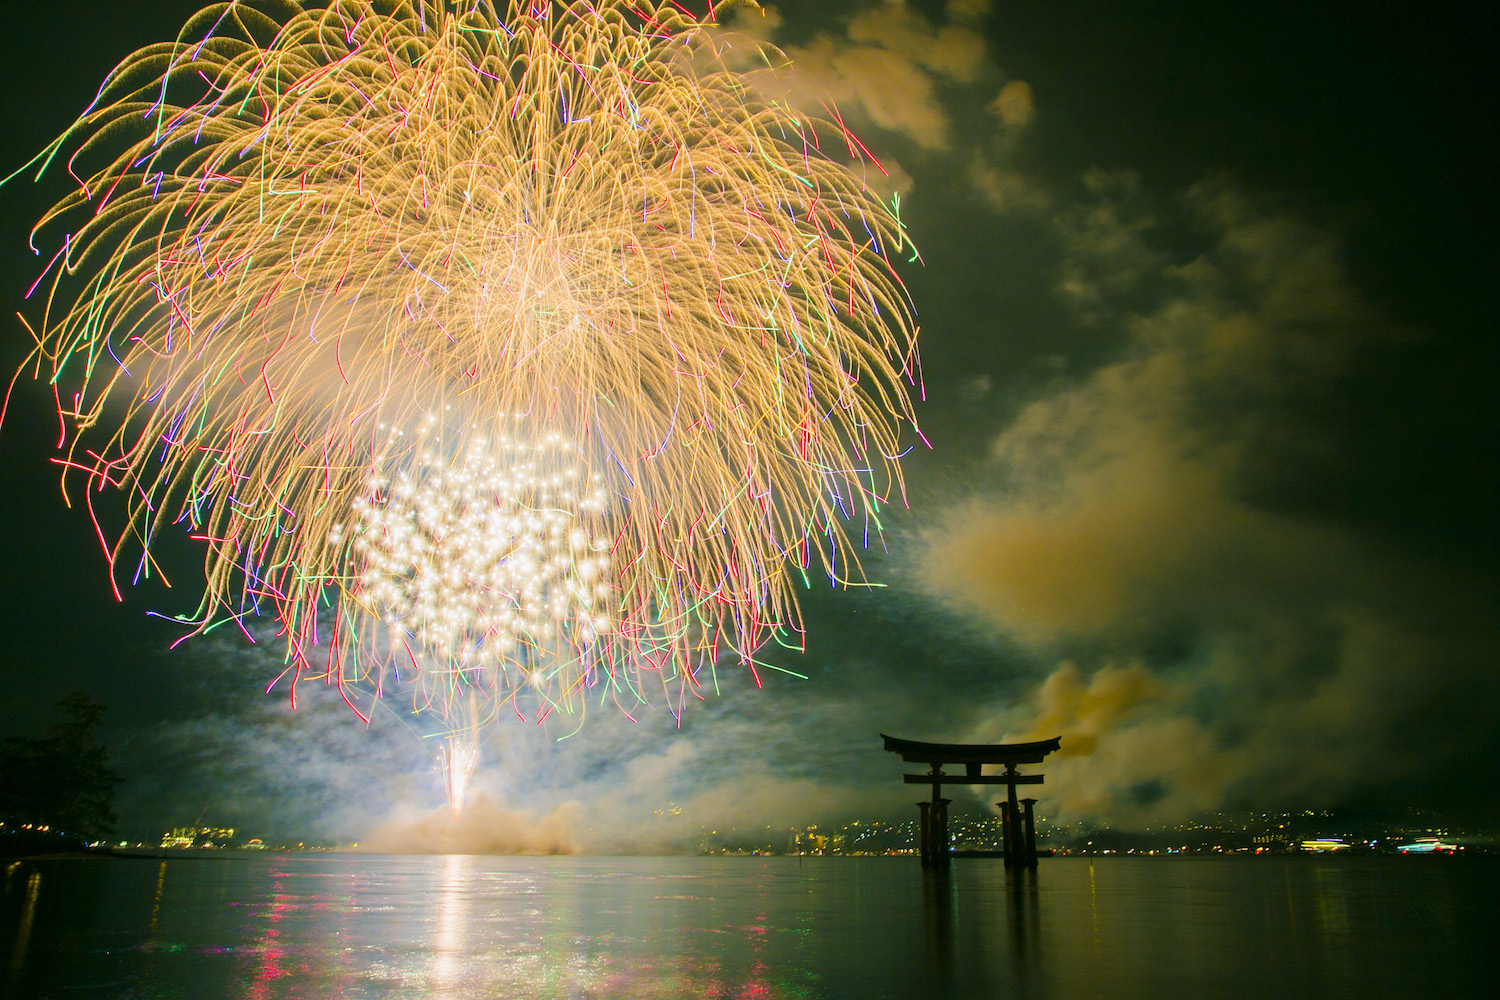 宮島水中花火大会14 世界遺産 厳島神社の大鳥居を正面に入れて花火を撮影 あやこ記録する